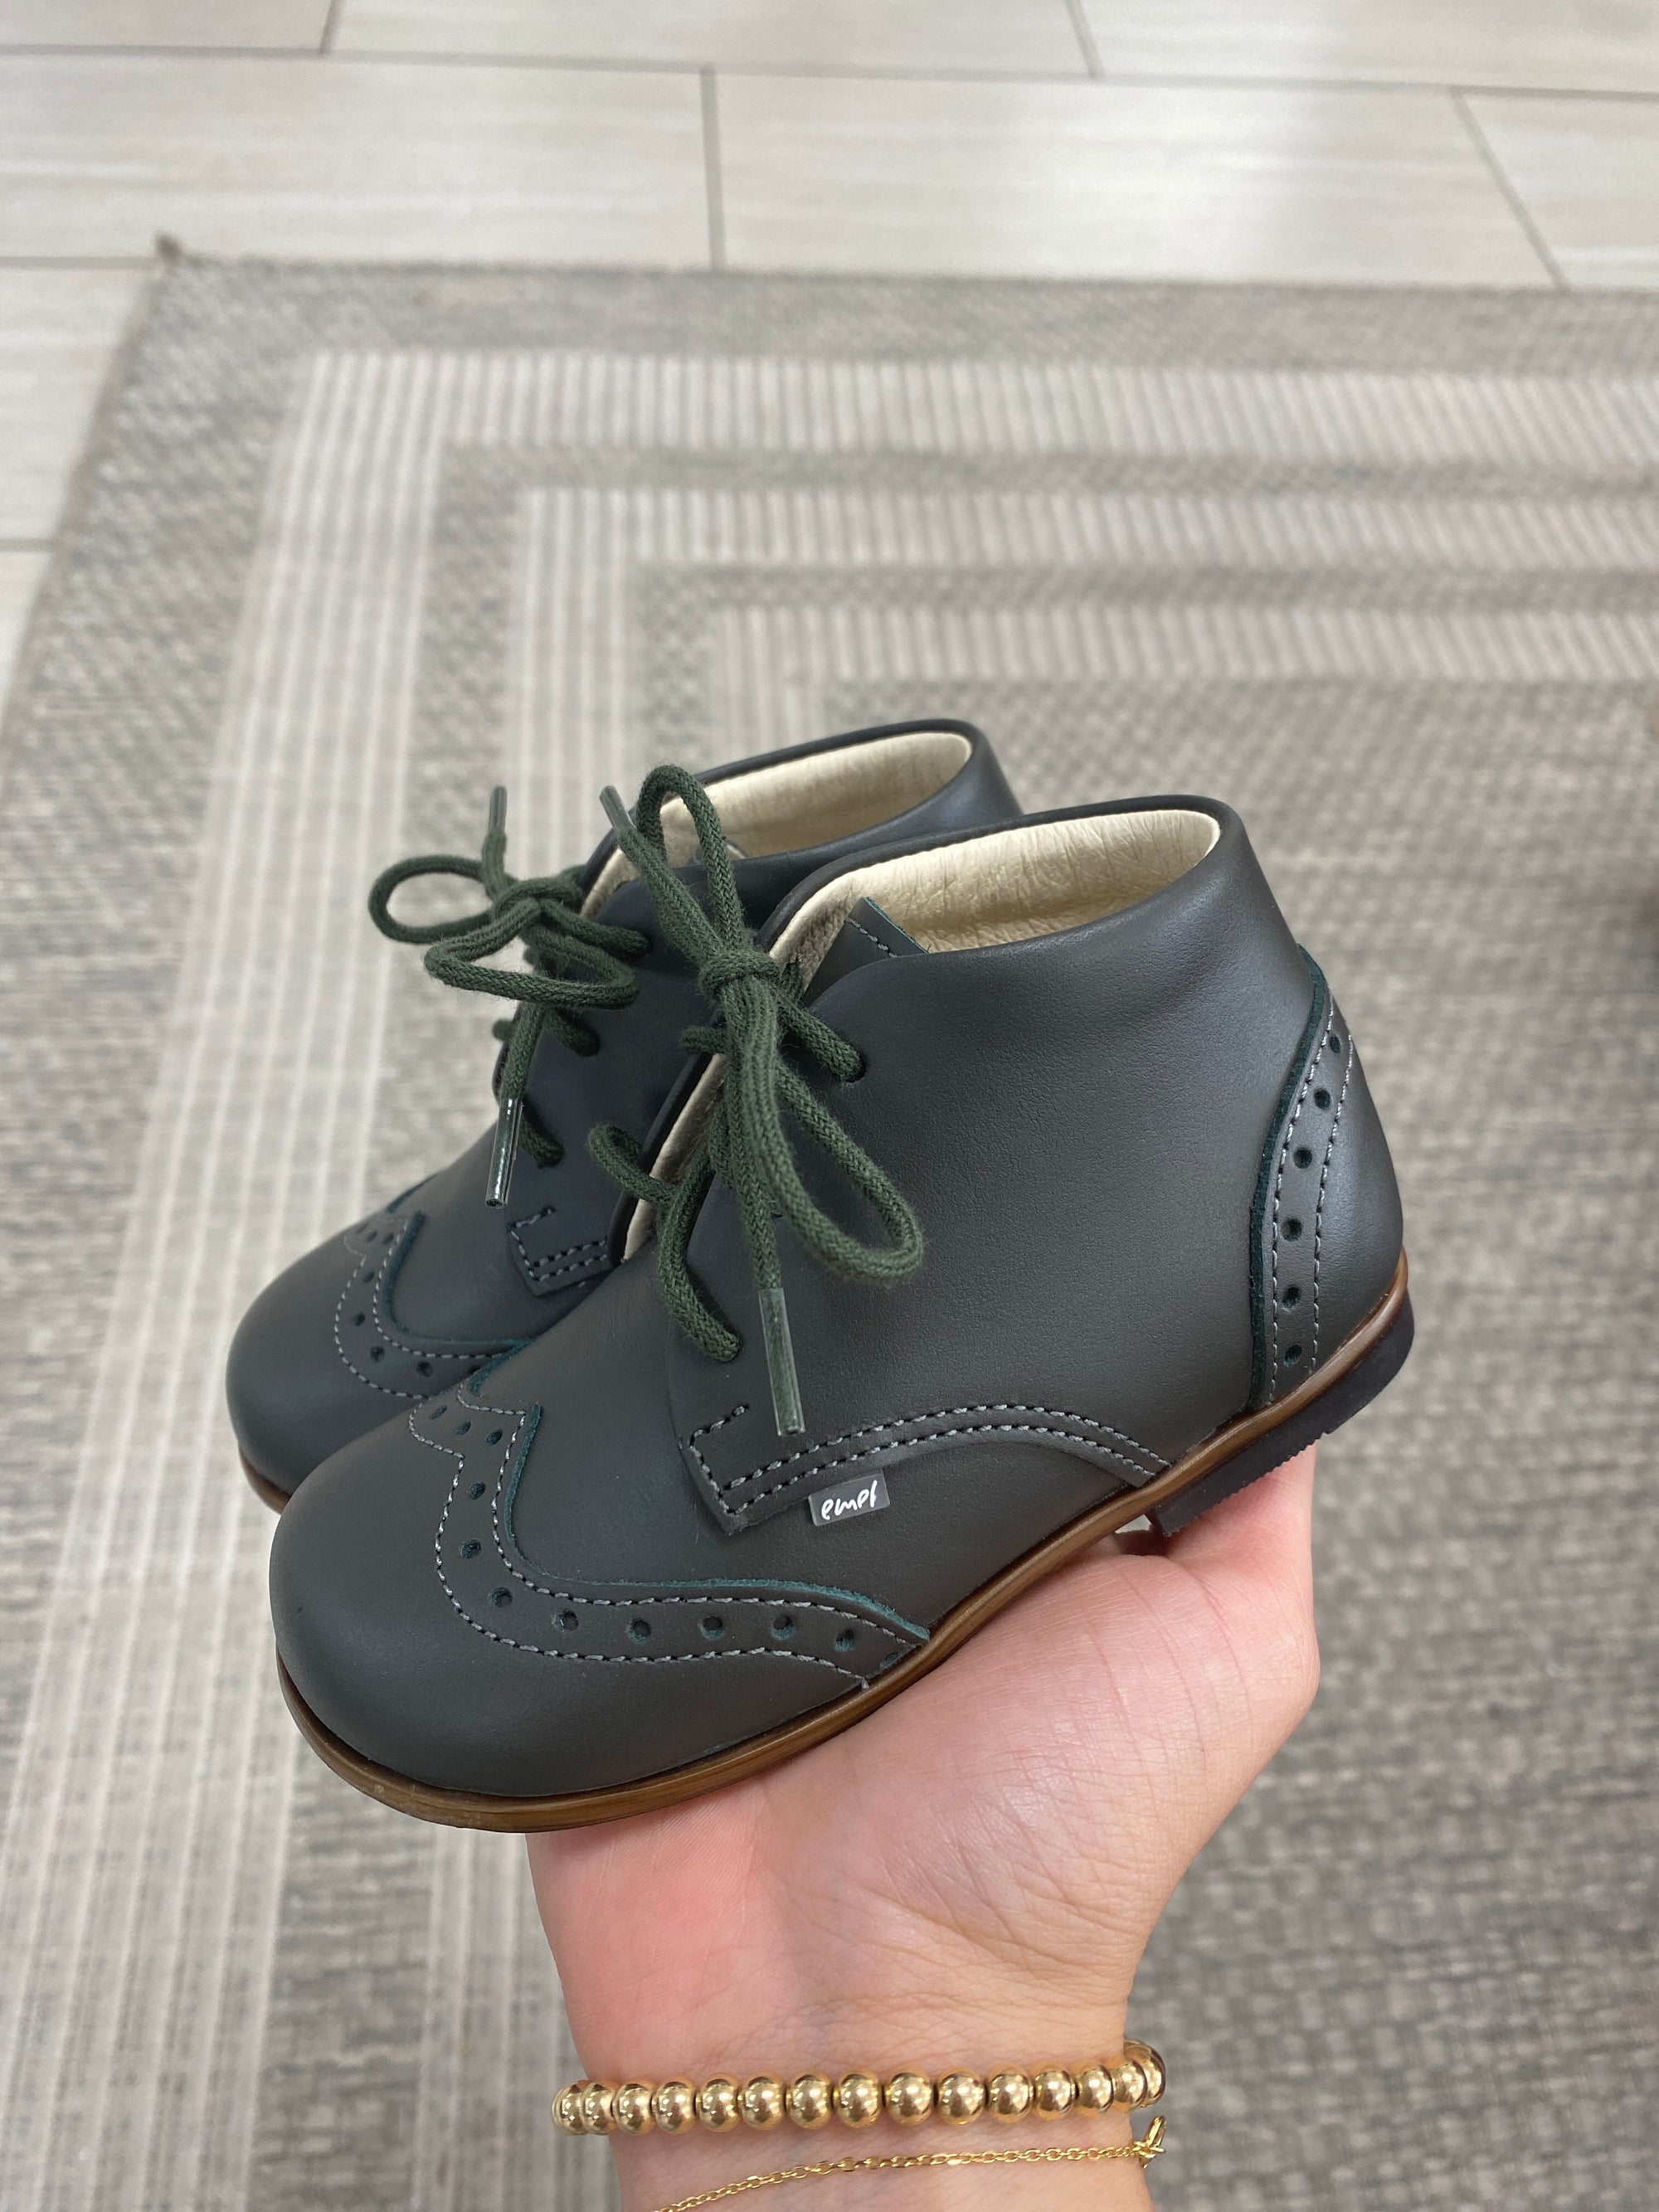 Emel Hunter Wingtip Baby Bootie-Tassel Children Shoes